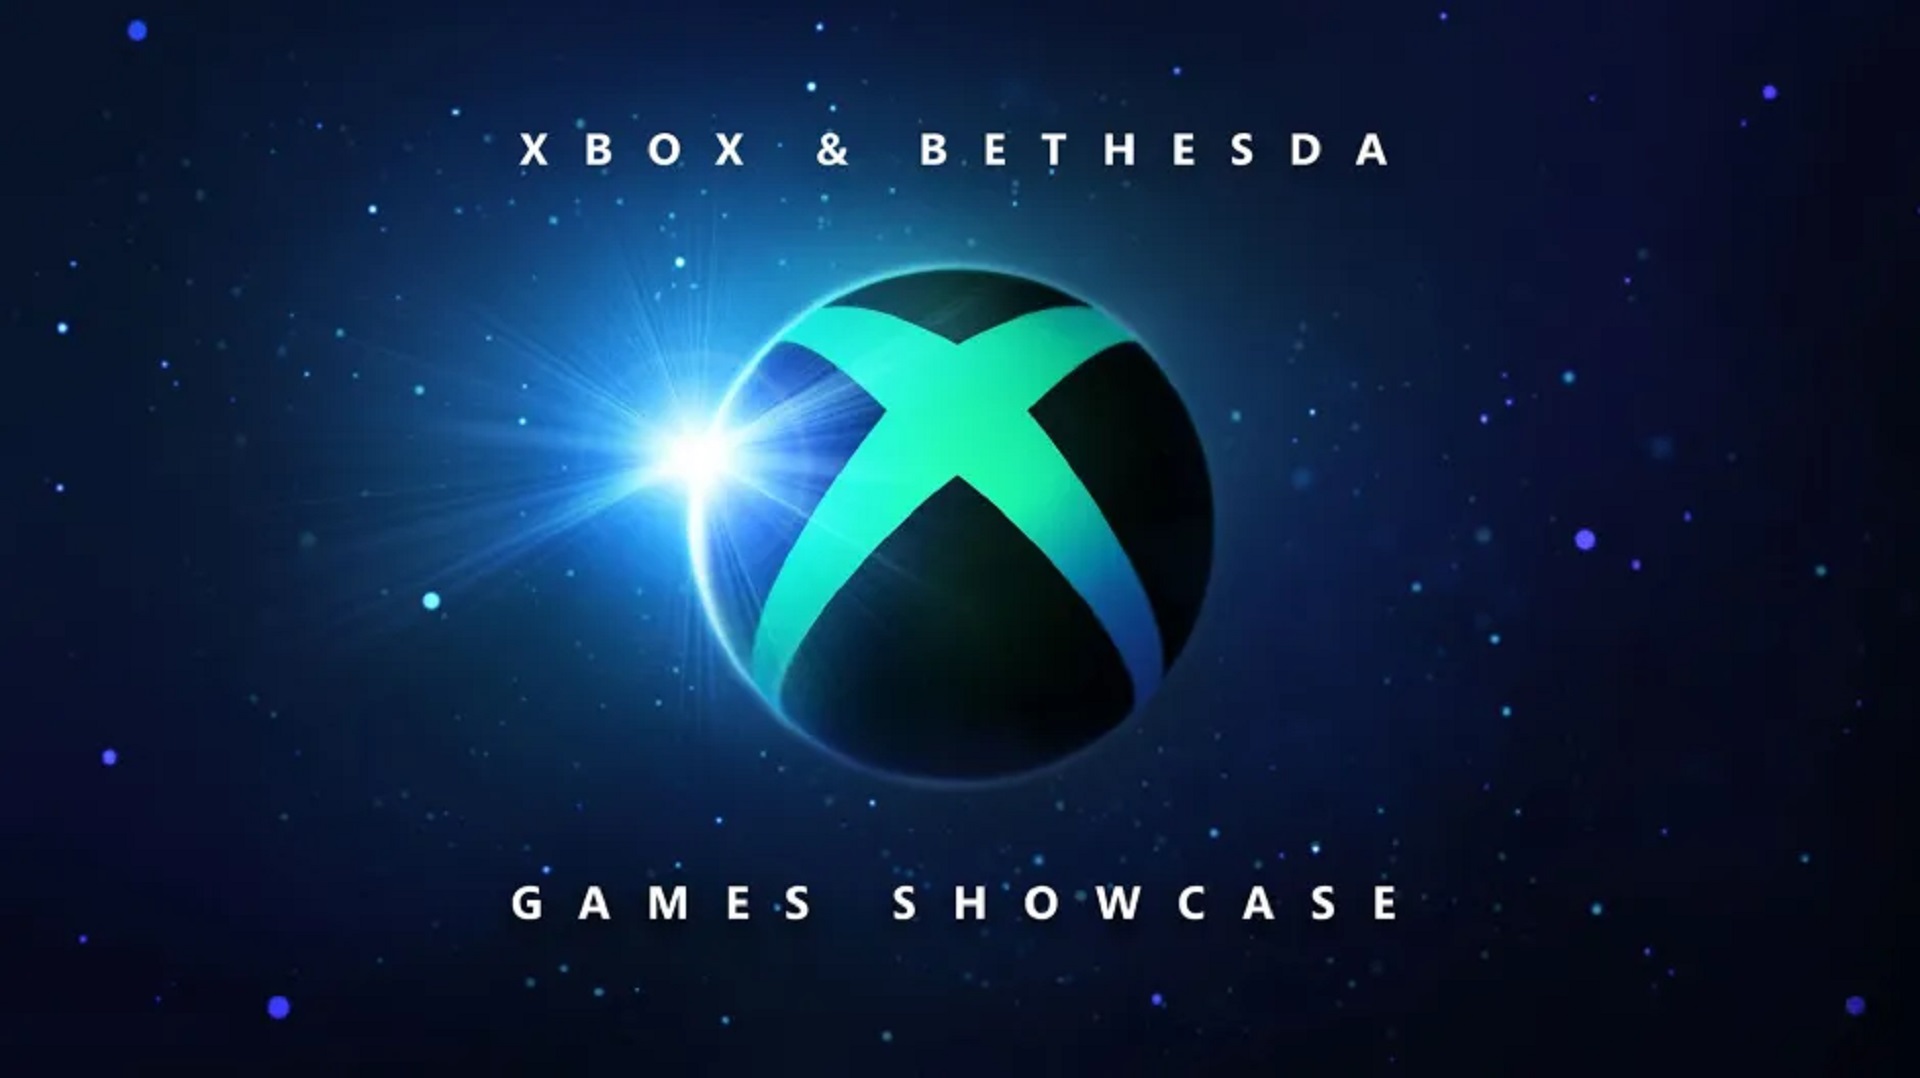 La conferencia Xbox & Bethesda tendrá una duración aproximada de 90 minutos.